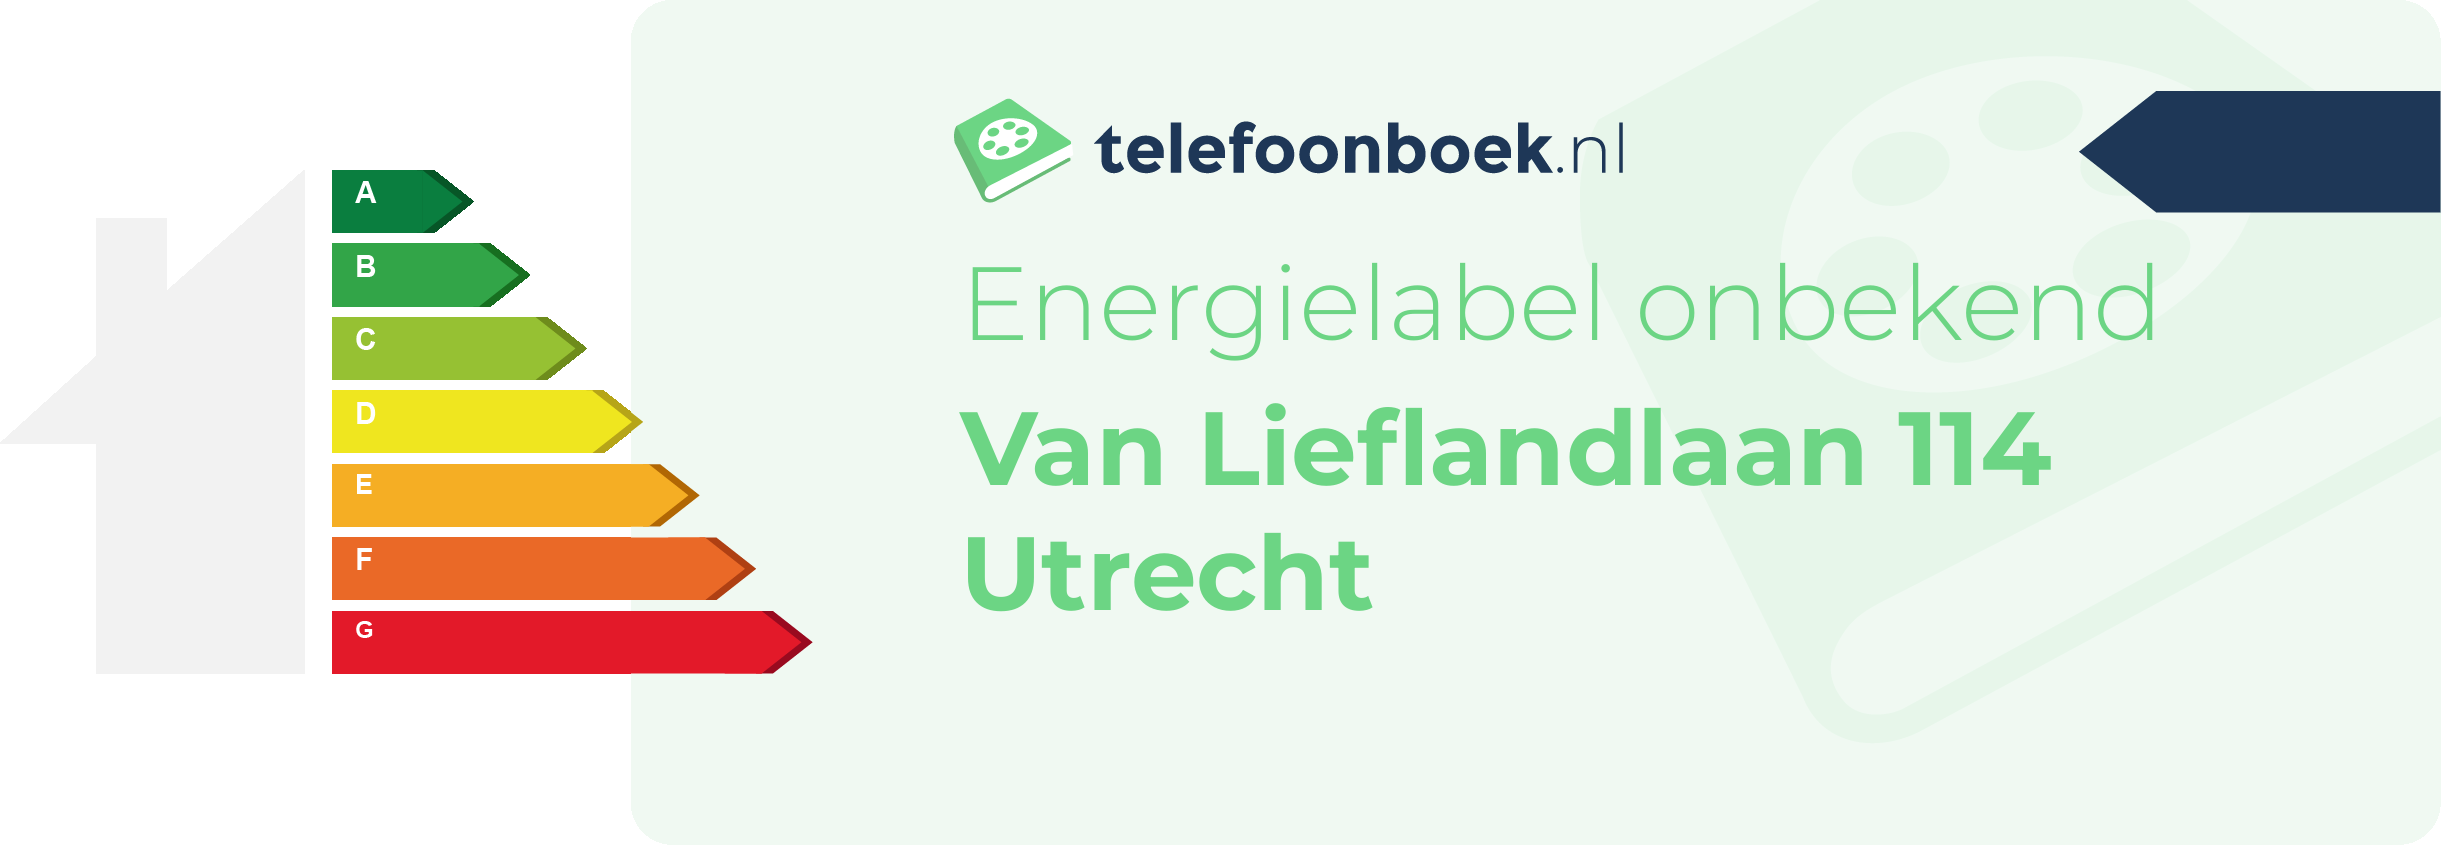 Energielabel Van Lieflandlaan 114 Utrecht